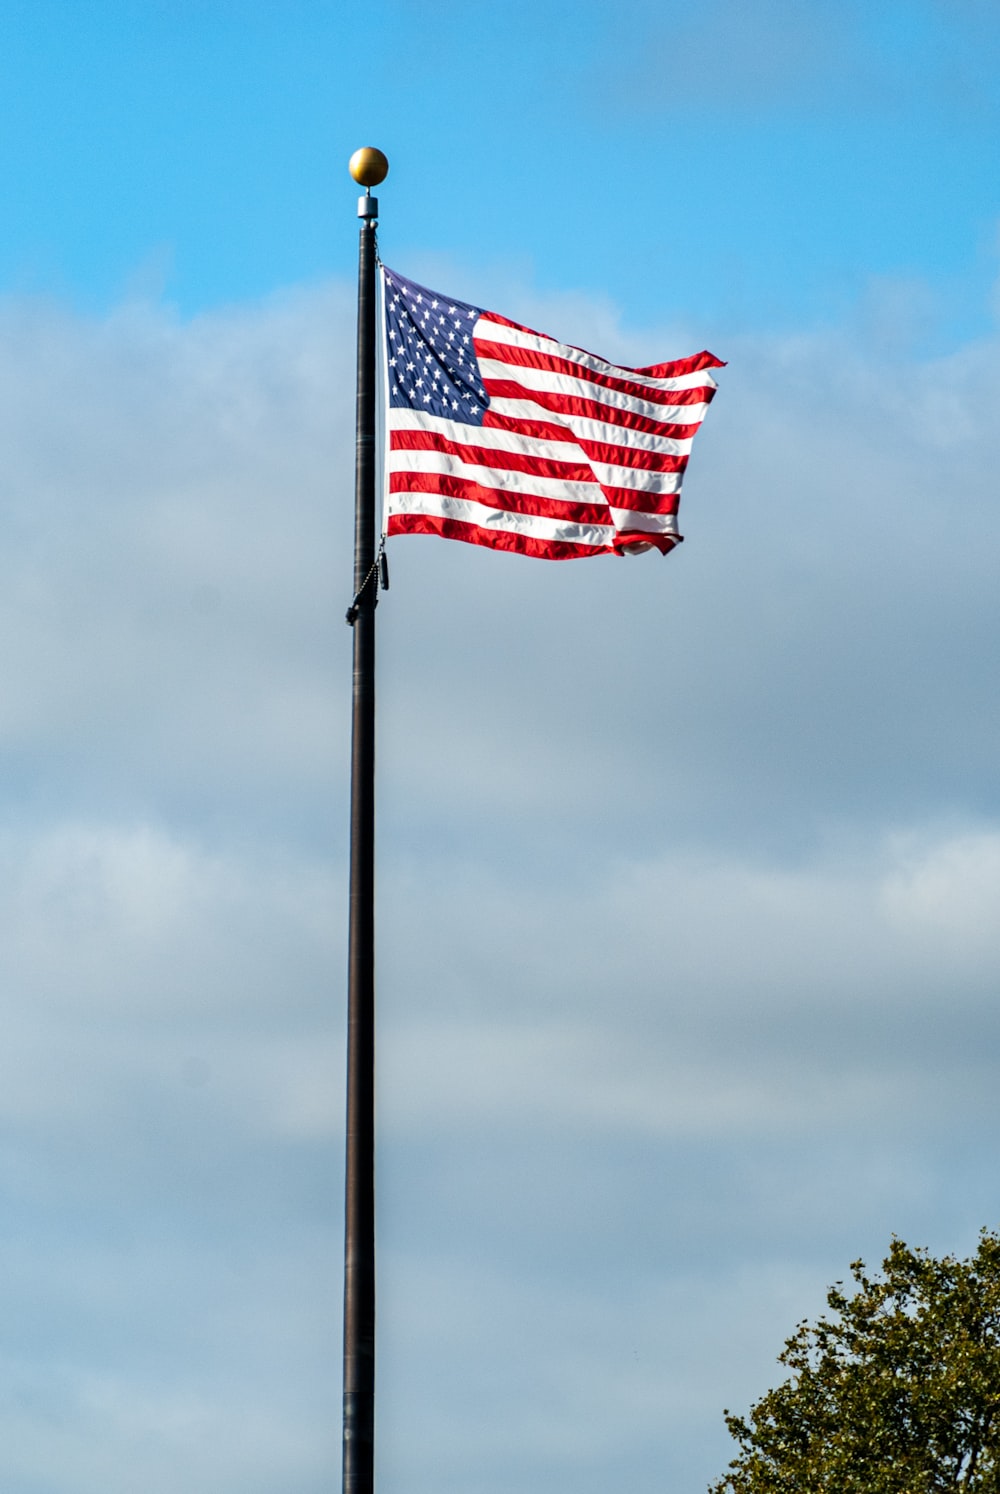 us a flag on pole under cloudy sky